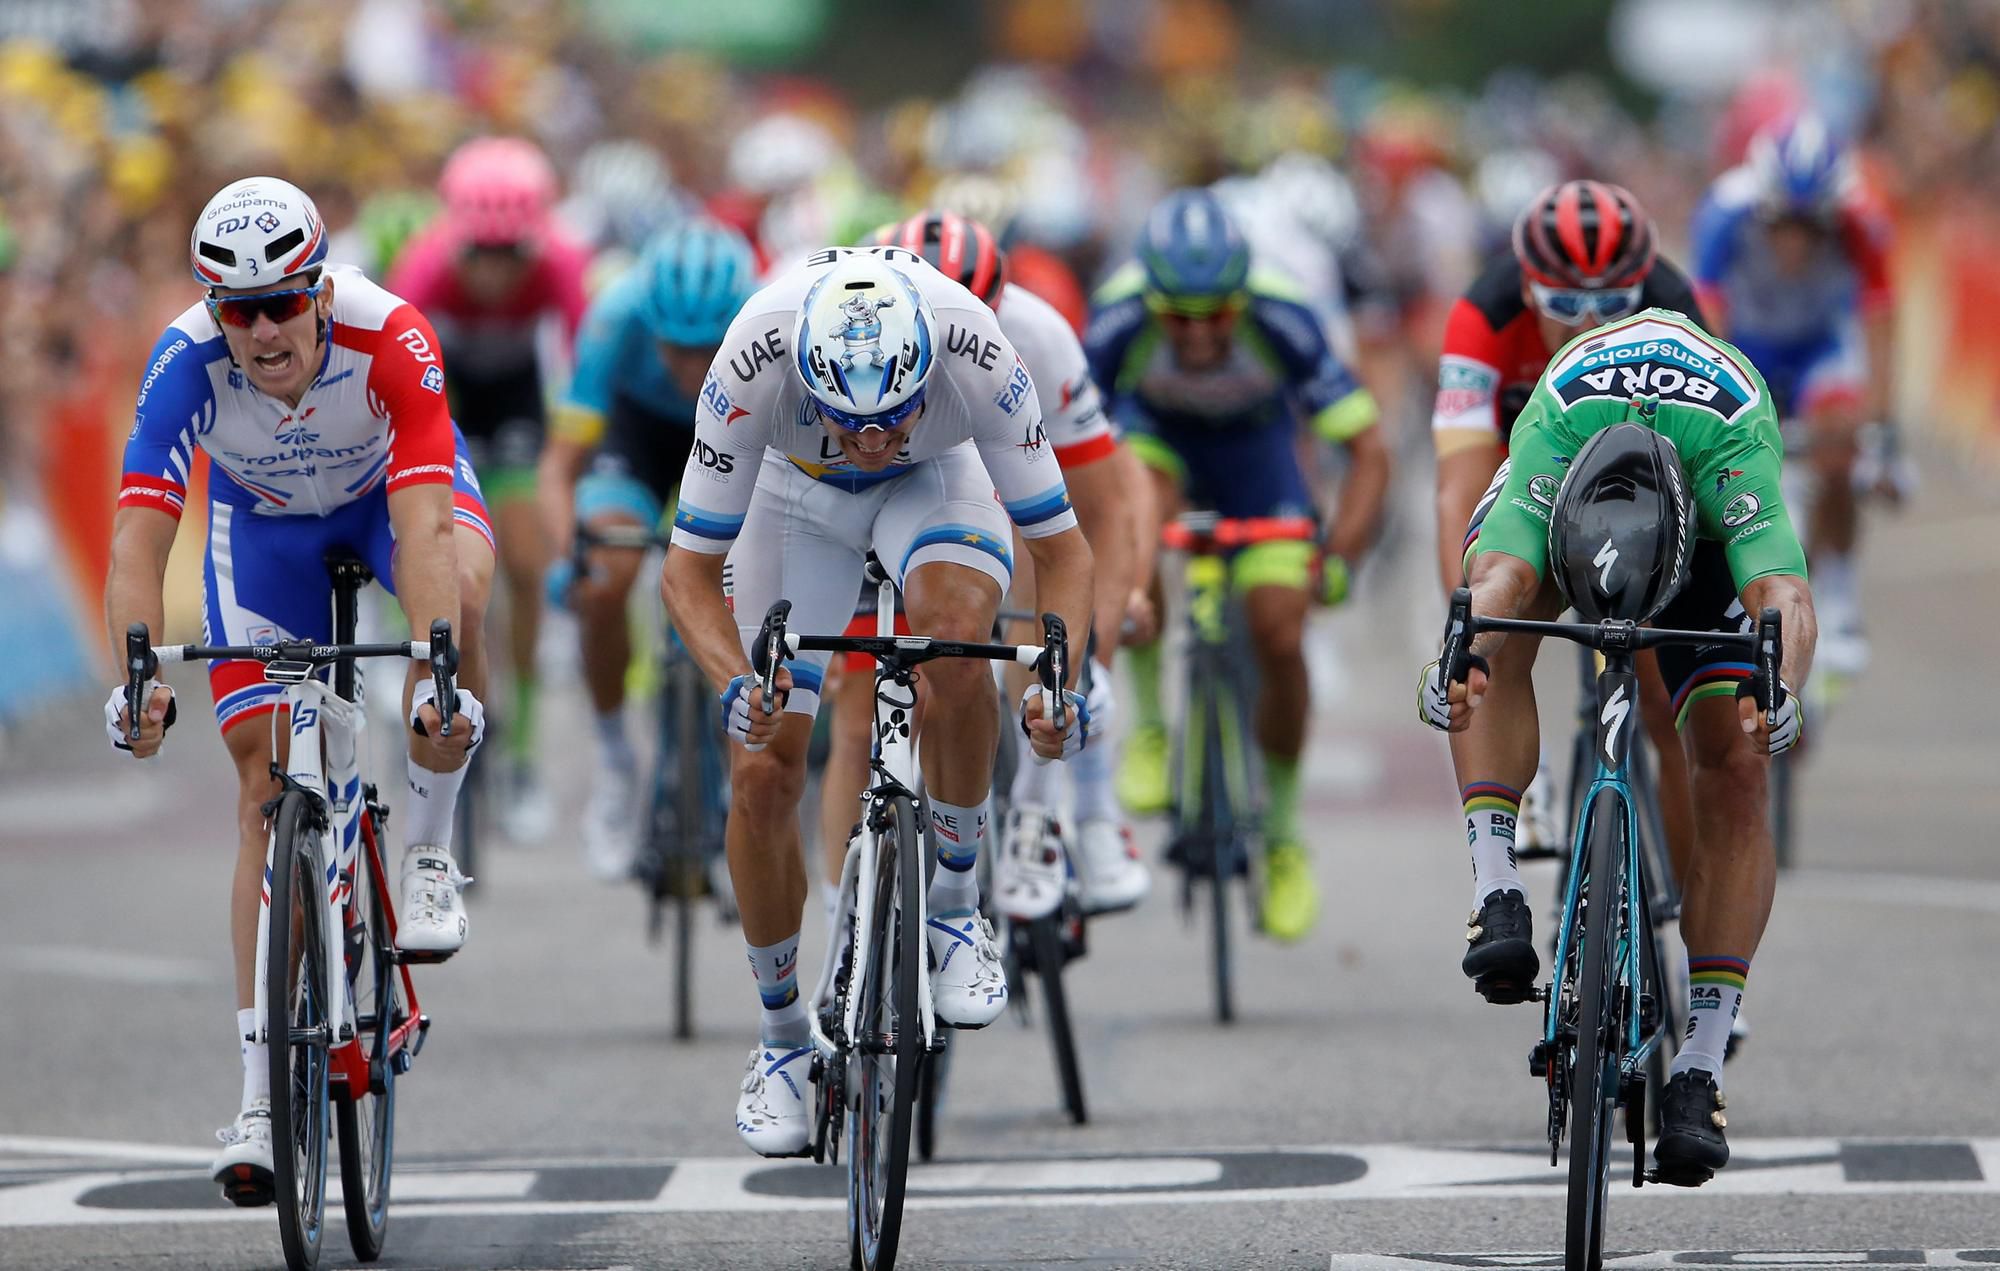 súboj Arnauda Démara, Alexandra Kristoffa a Petra Sagana v 13. etape